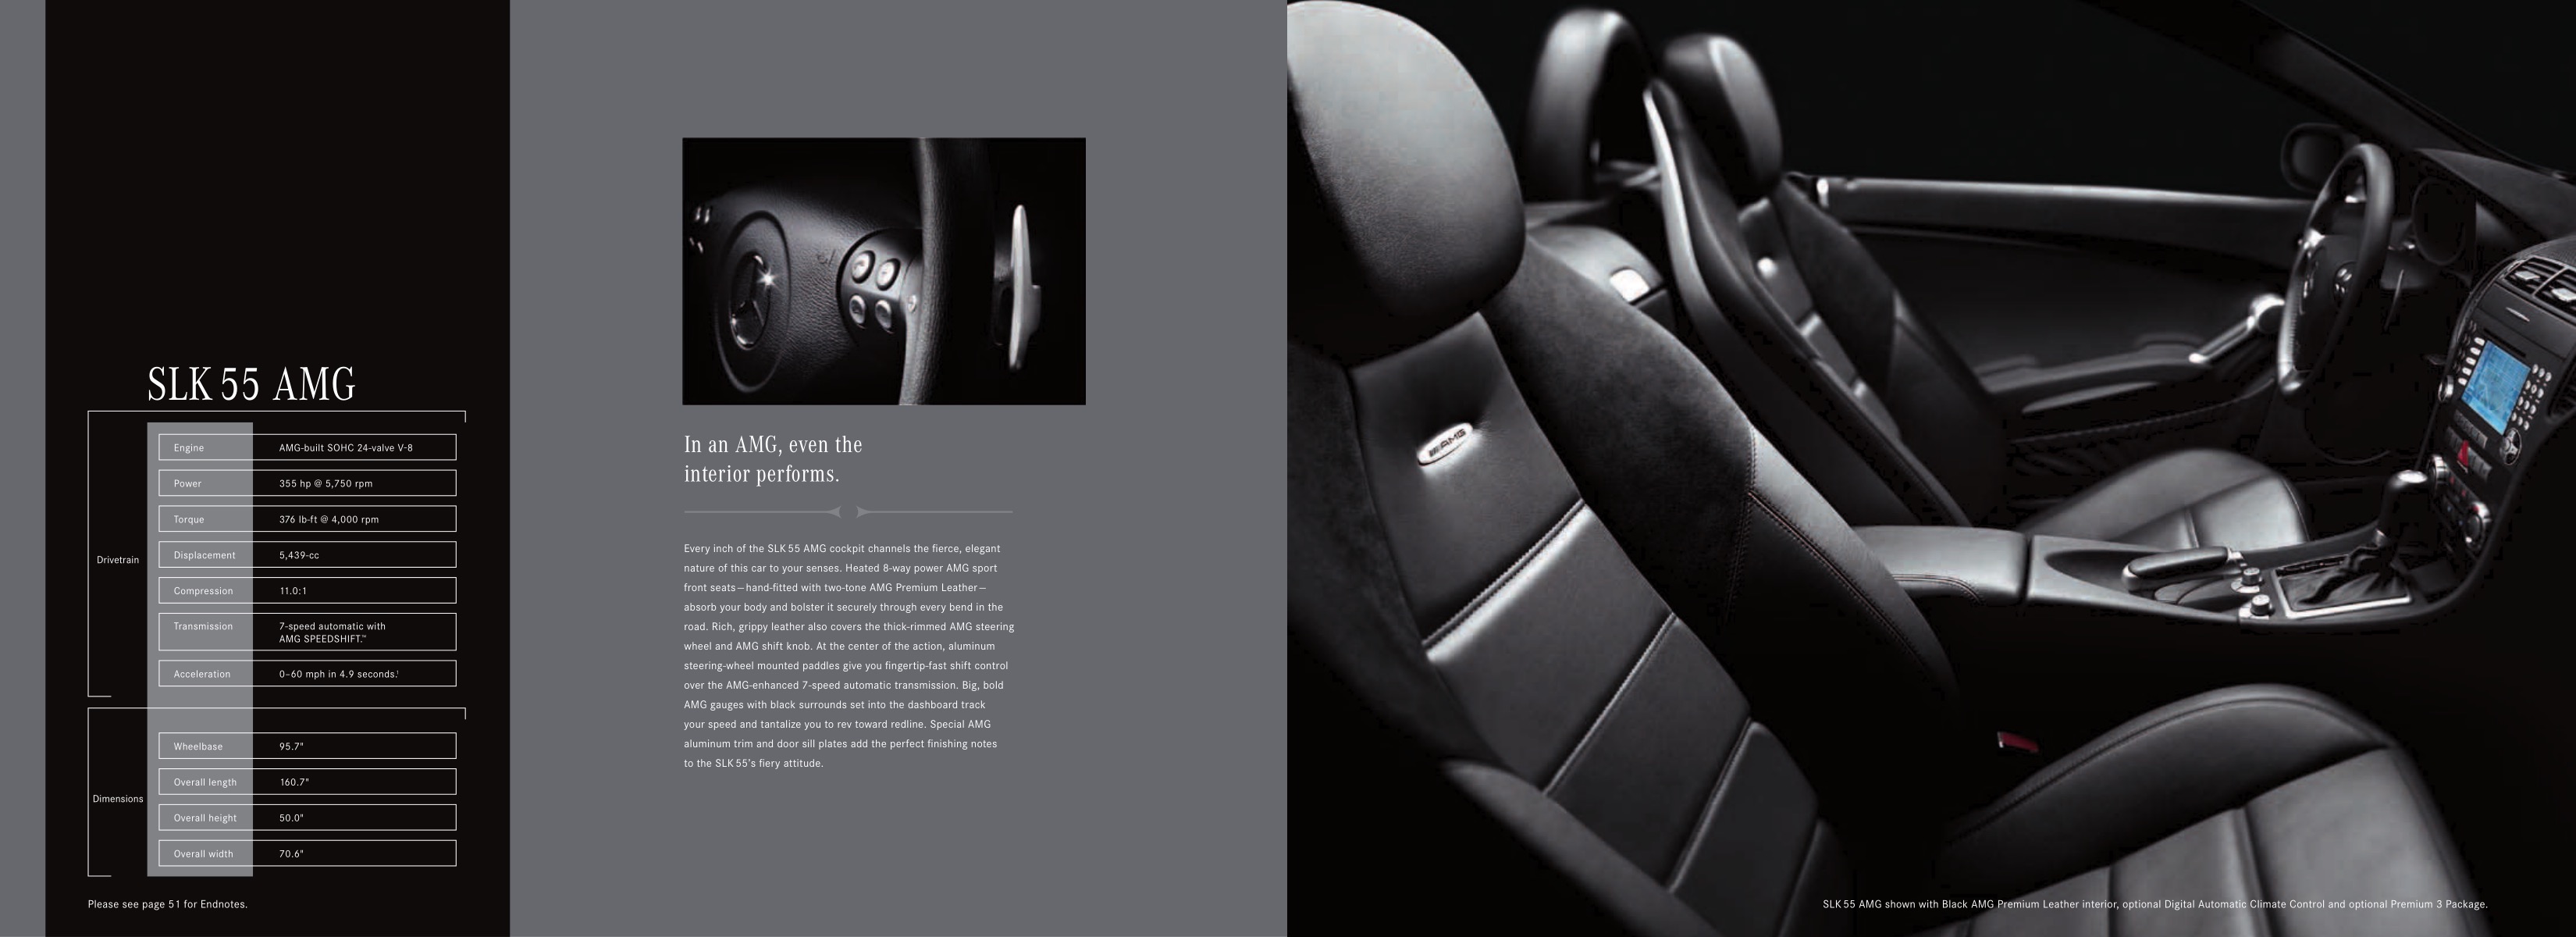 2008 Mercedes-Benz SLK Brochure Page 1